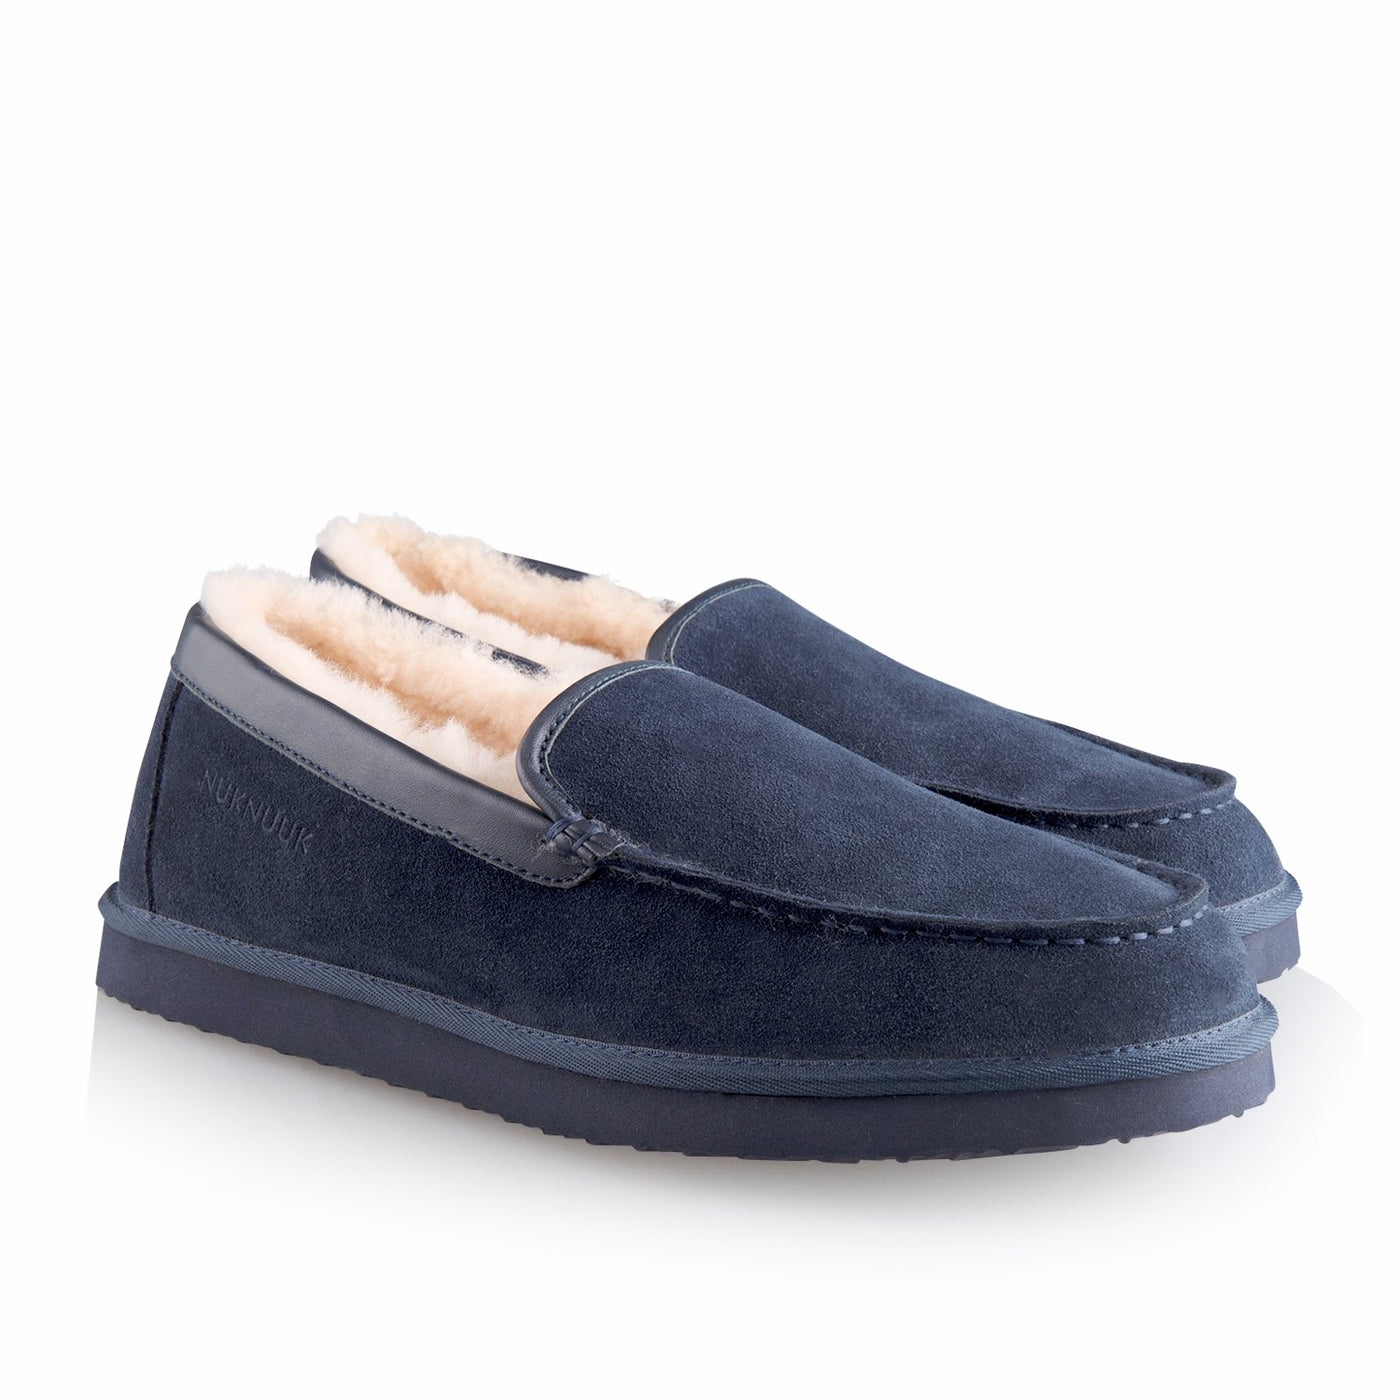 Marco men’s slipper (Navy blue) - Nuknuuk